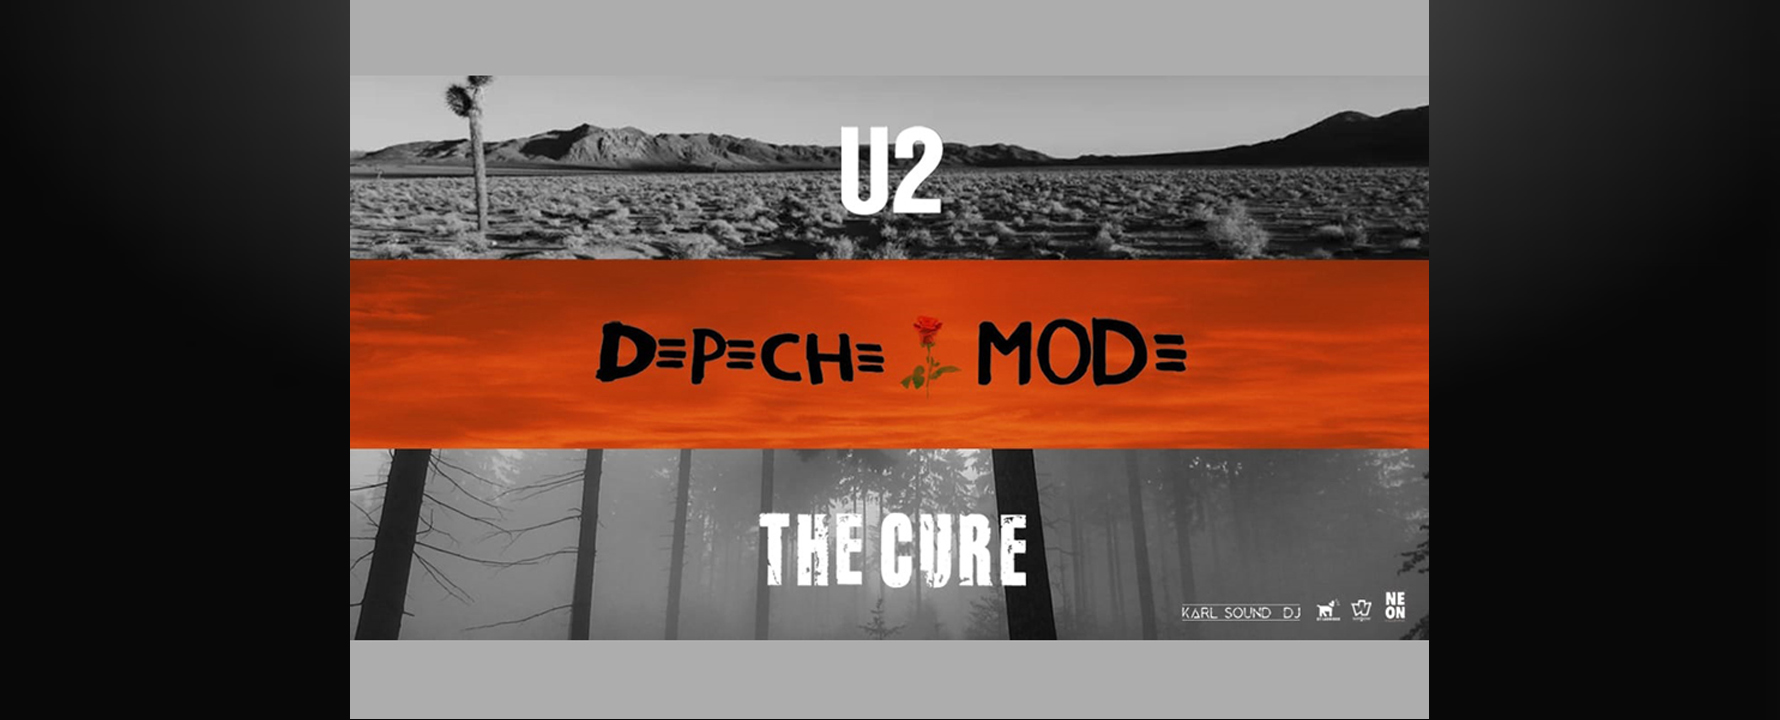 Concierto The Cure, U2 & Depeche Mode by Neon Collective en Málaga